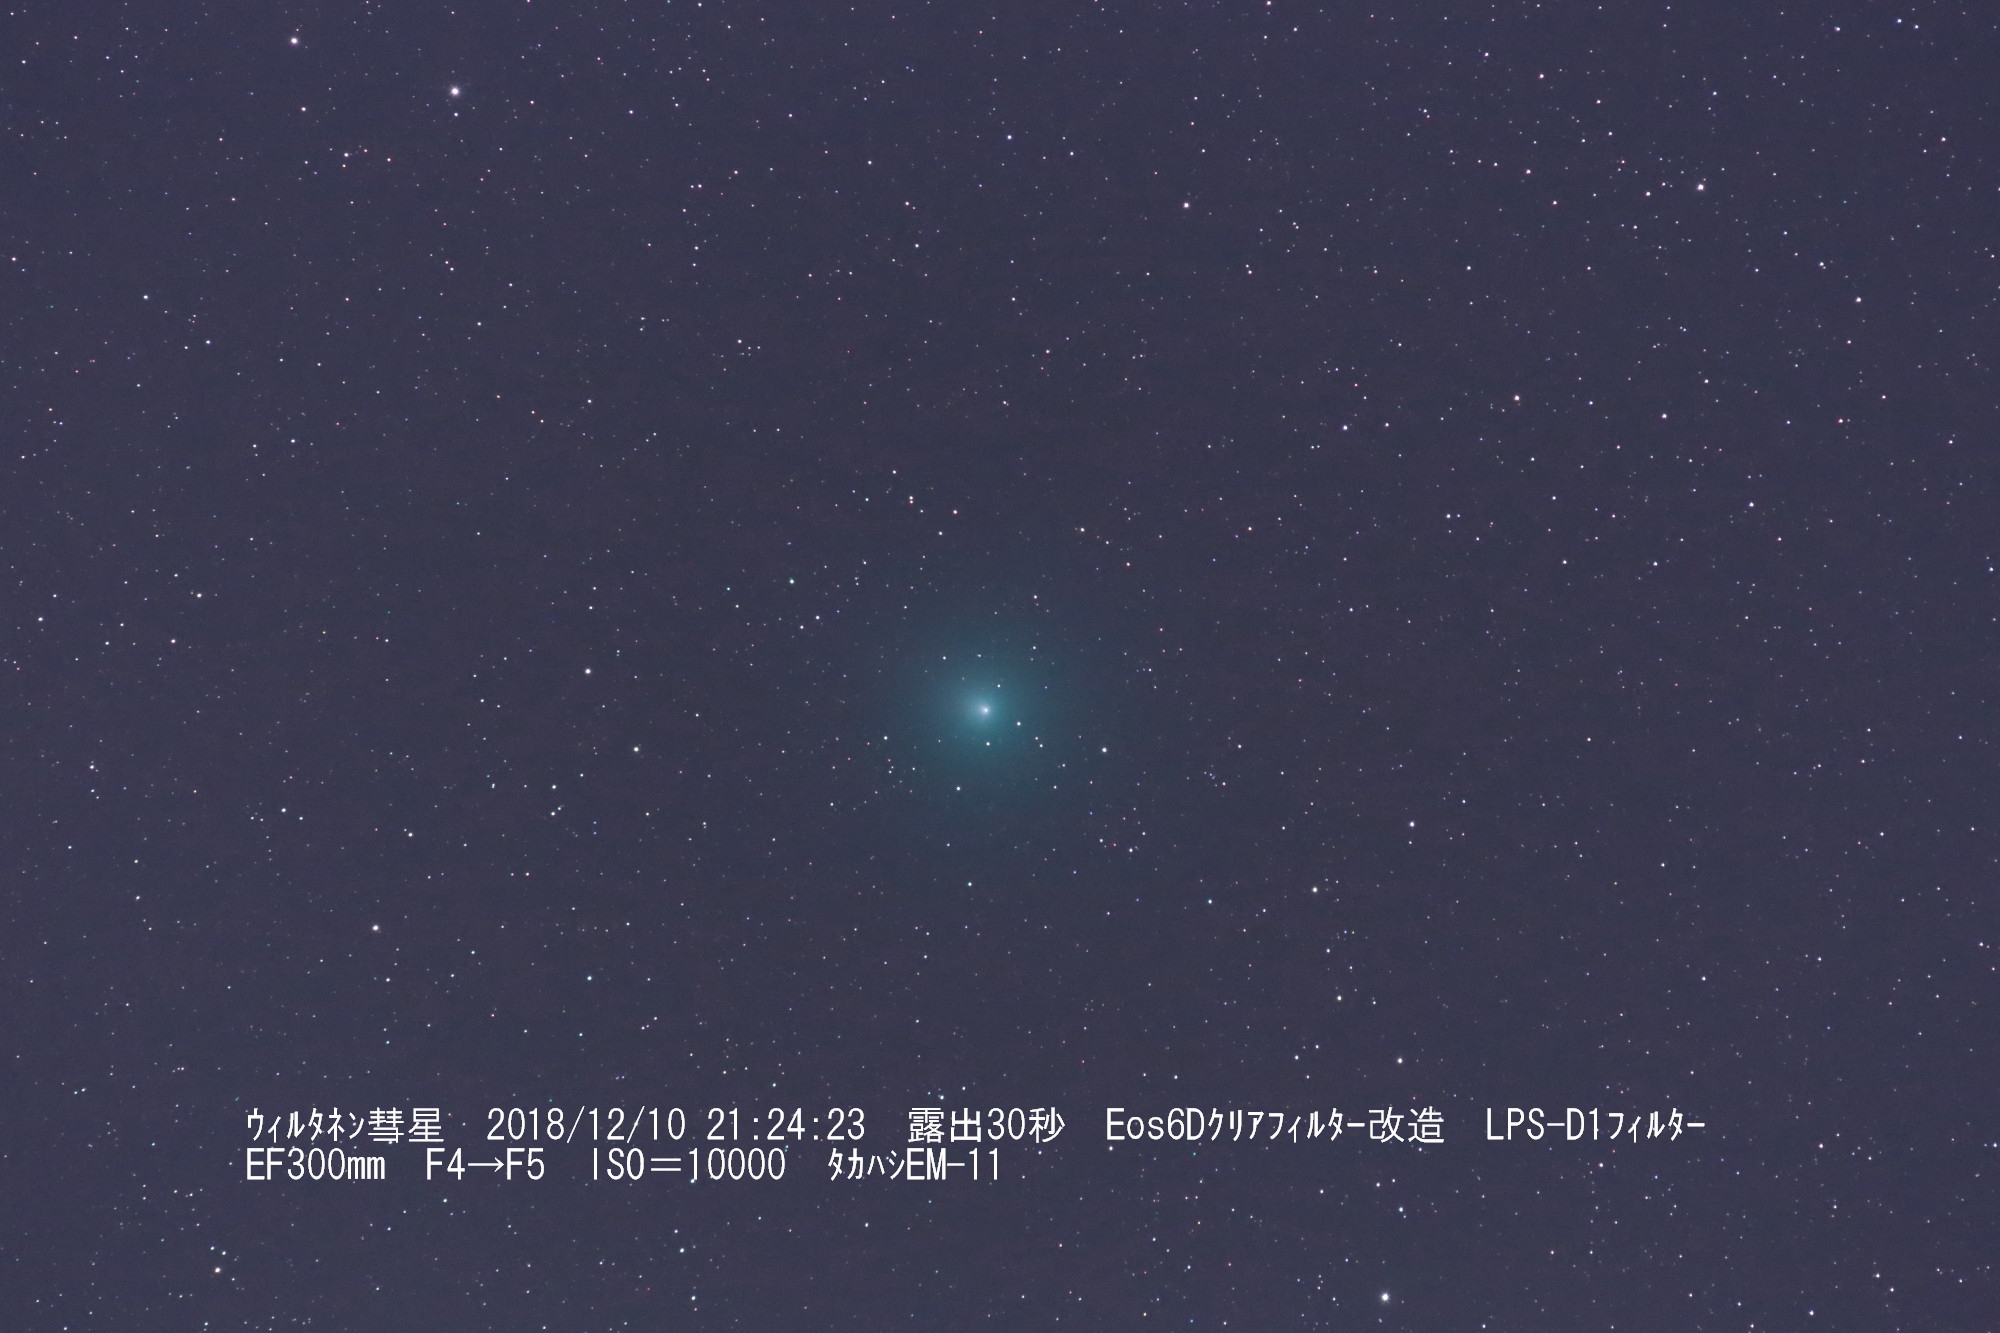 ウィルタネン彗星 46p よなご星の会 星星 Hoshi Boshi